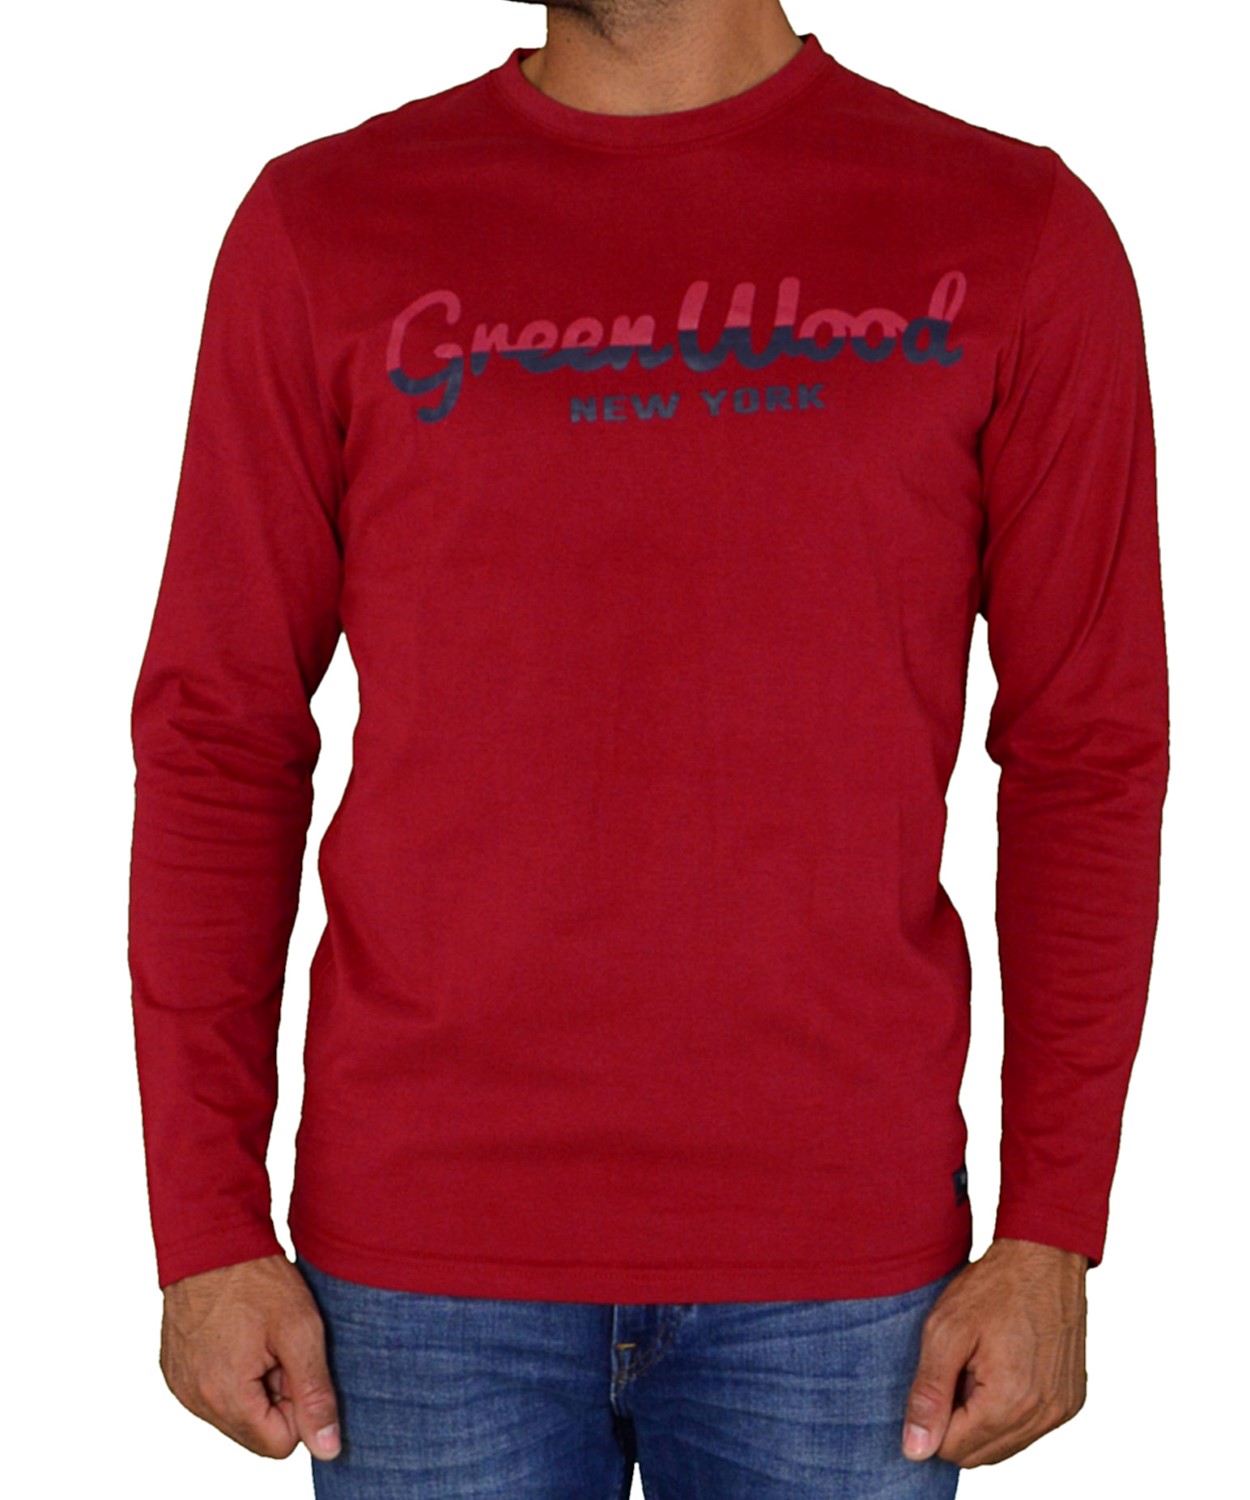 Ανδρική μακρυμάνικη μπλούζα με τύπωμα κόκκινη 02D902772Q